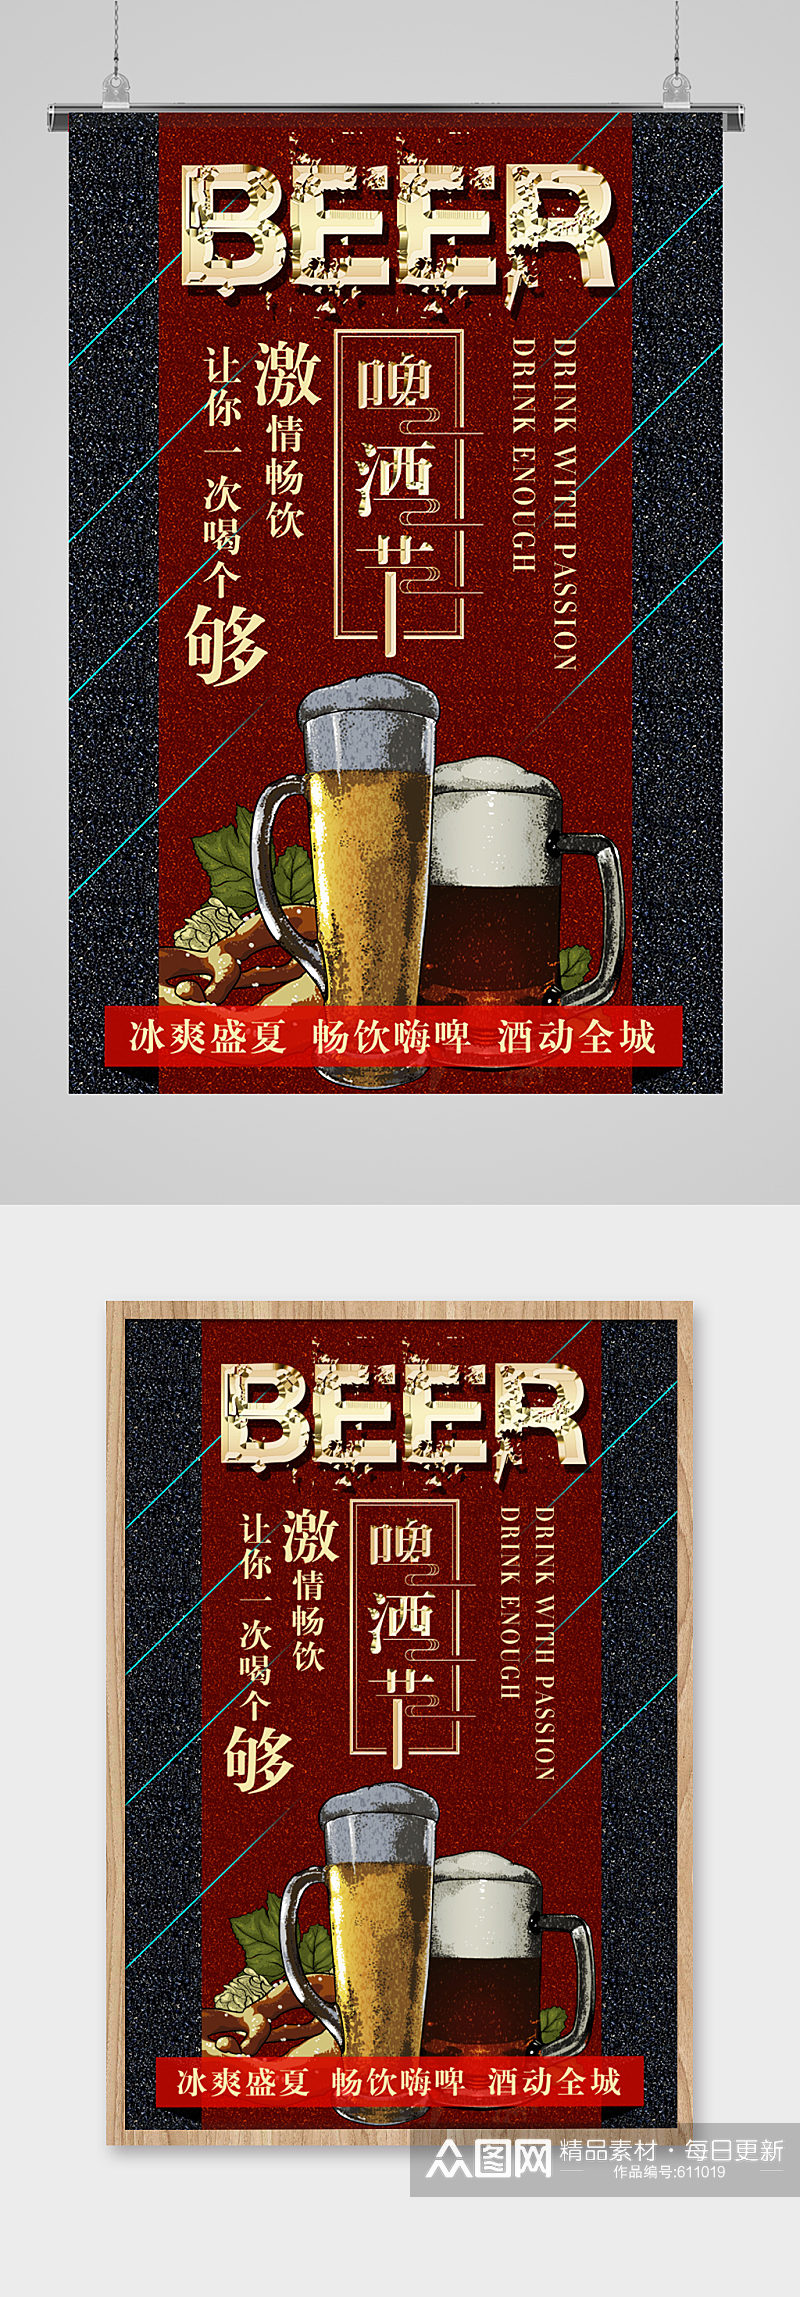 激情畅饮的啤酒节活动海报素材